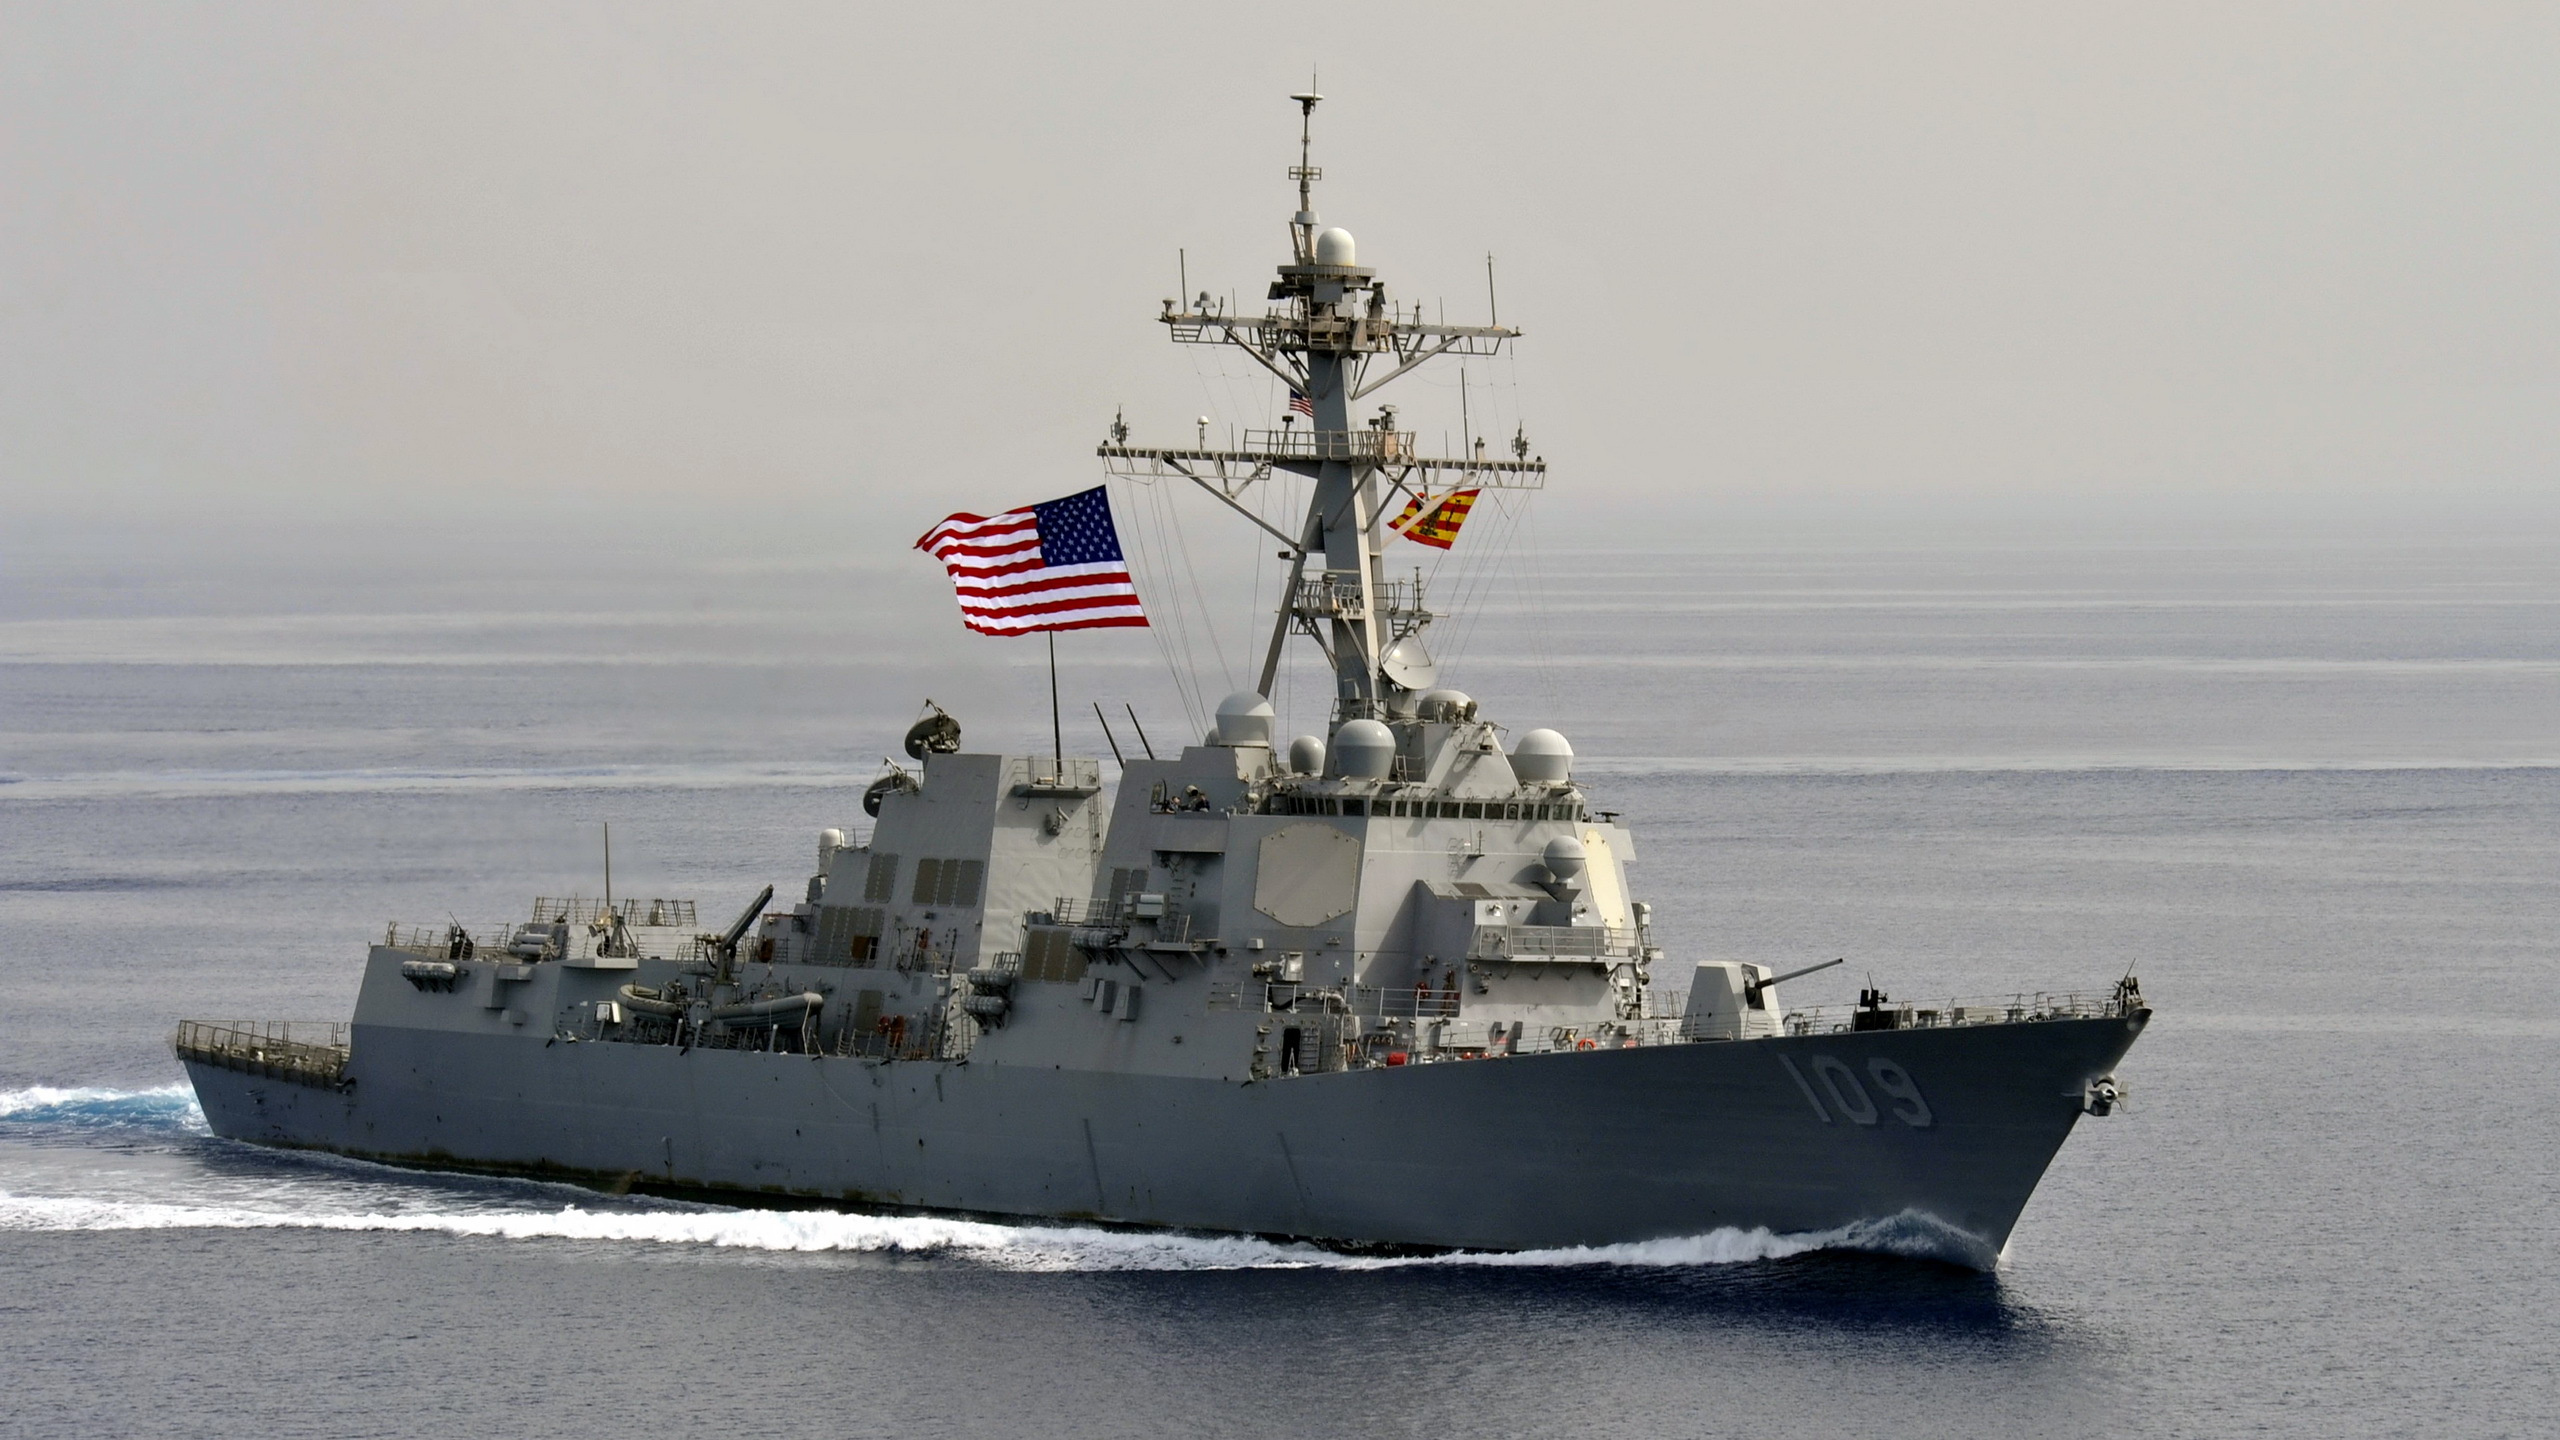 Обои военно морской флот США, разрушитель, военный корабль, ВМС США Джейсон данхем, морское ведомство в разрешении 2560x1440